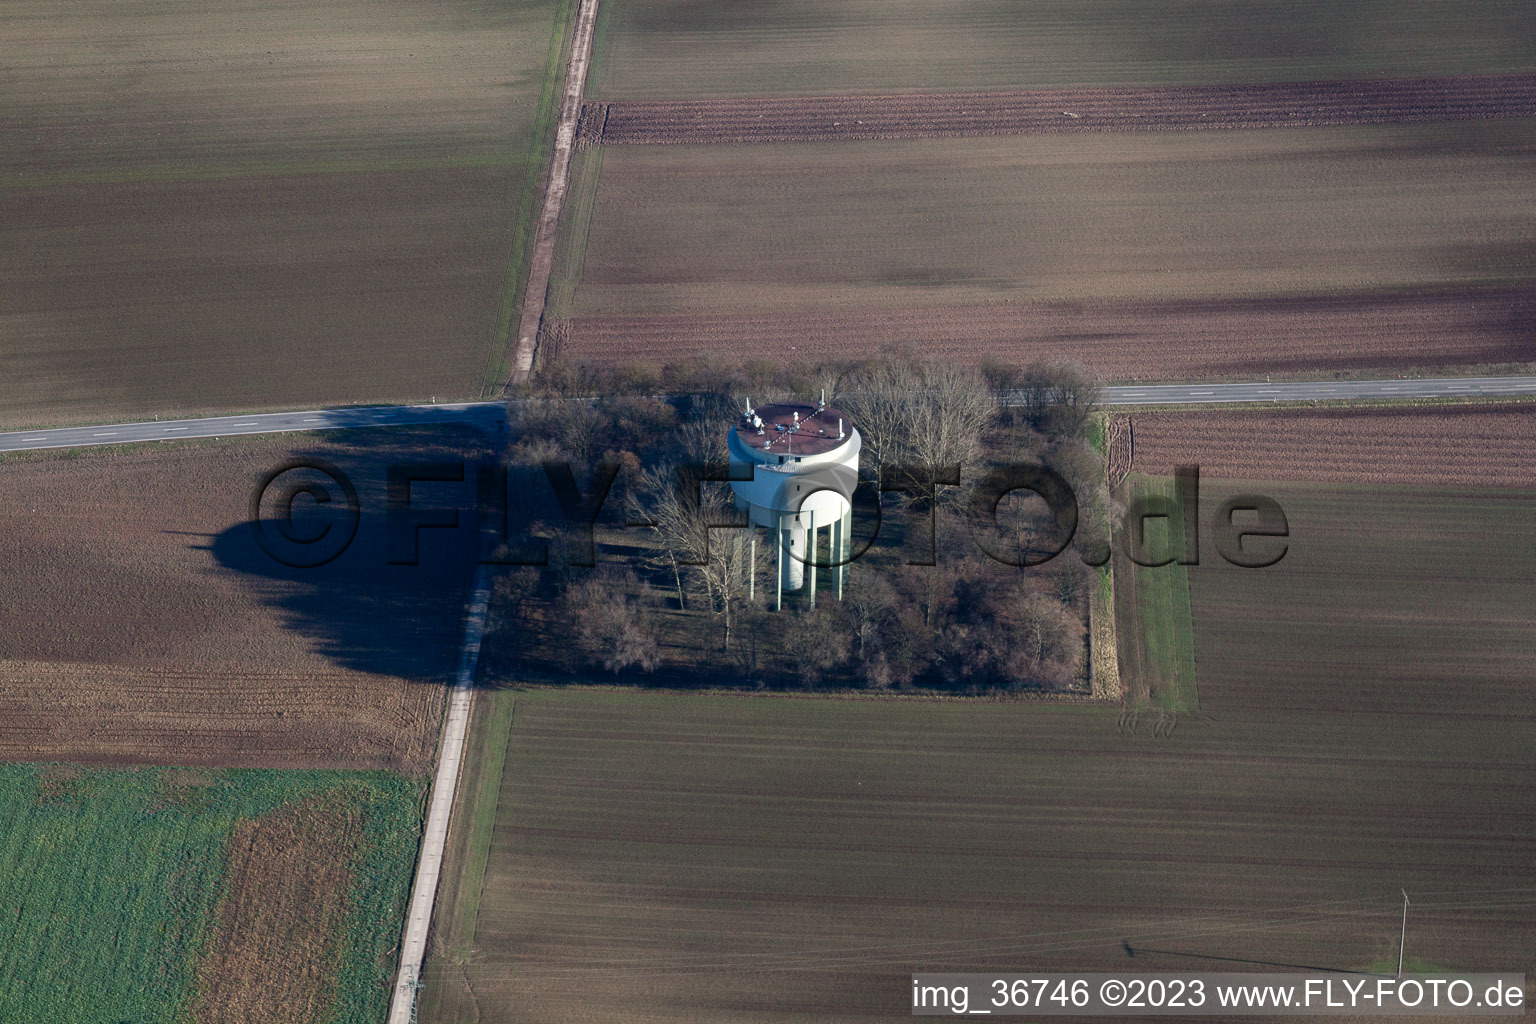 Vue aérienne de Château d'eau à Bellheim dans le département Rhénanie-Palatinat, Allemagne